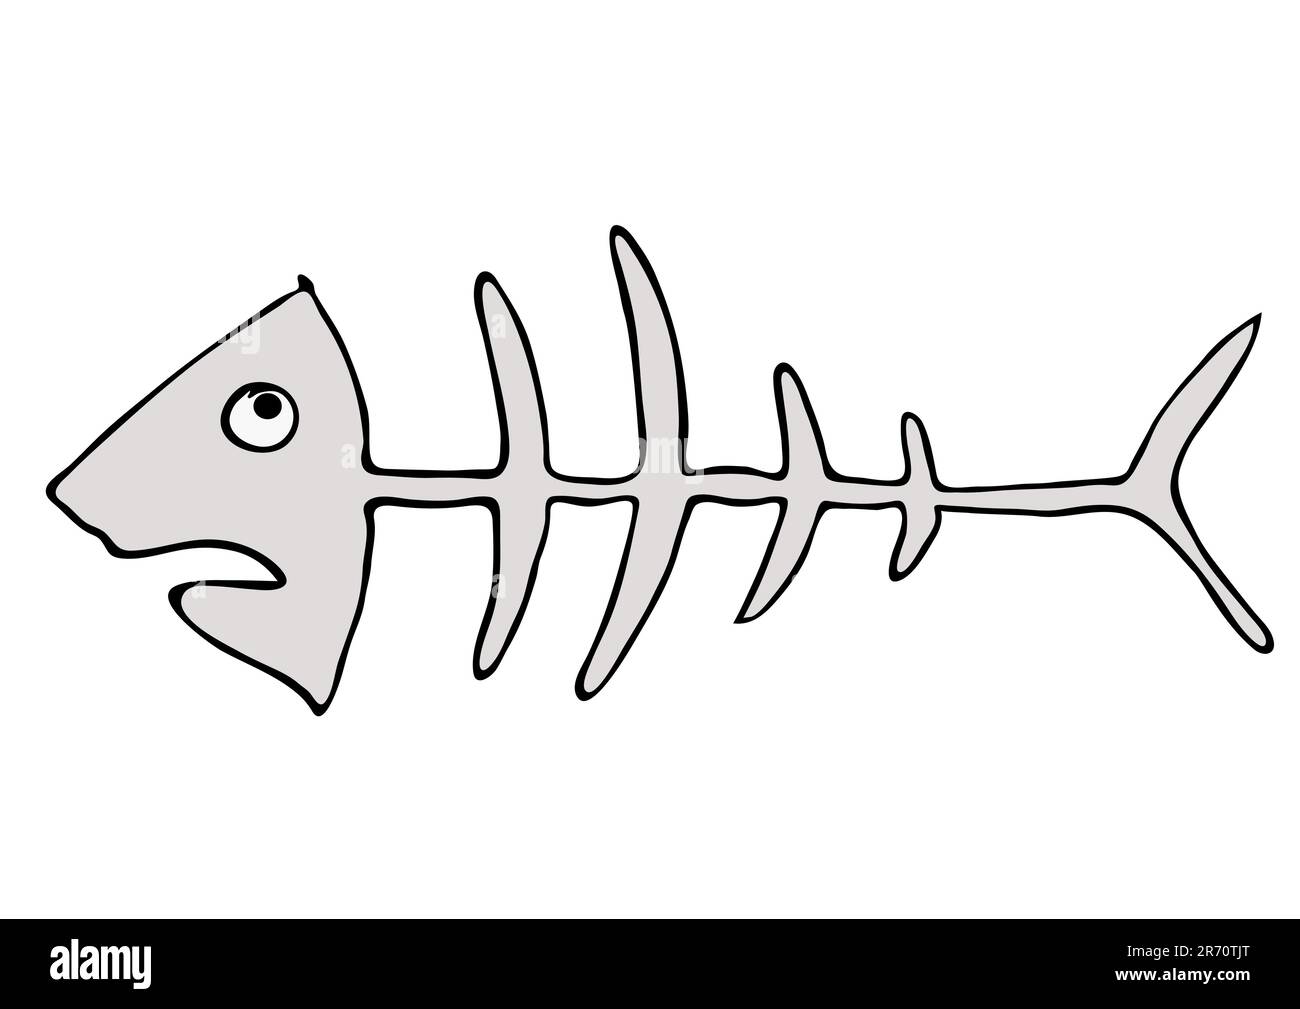 Cartoon-Darstellung des Fischskeletts. Diese Datei ist ein Vektor - kann ohne Qualitätsverlust auf jede Größe skaliert werden. Stock Vektor